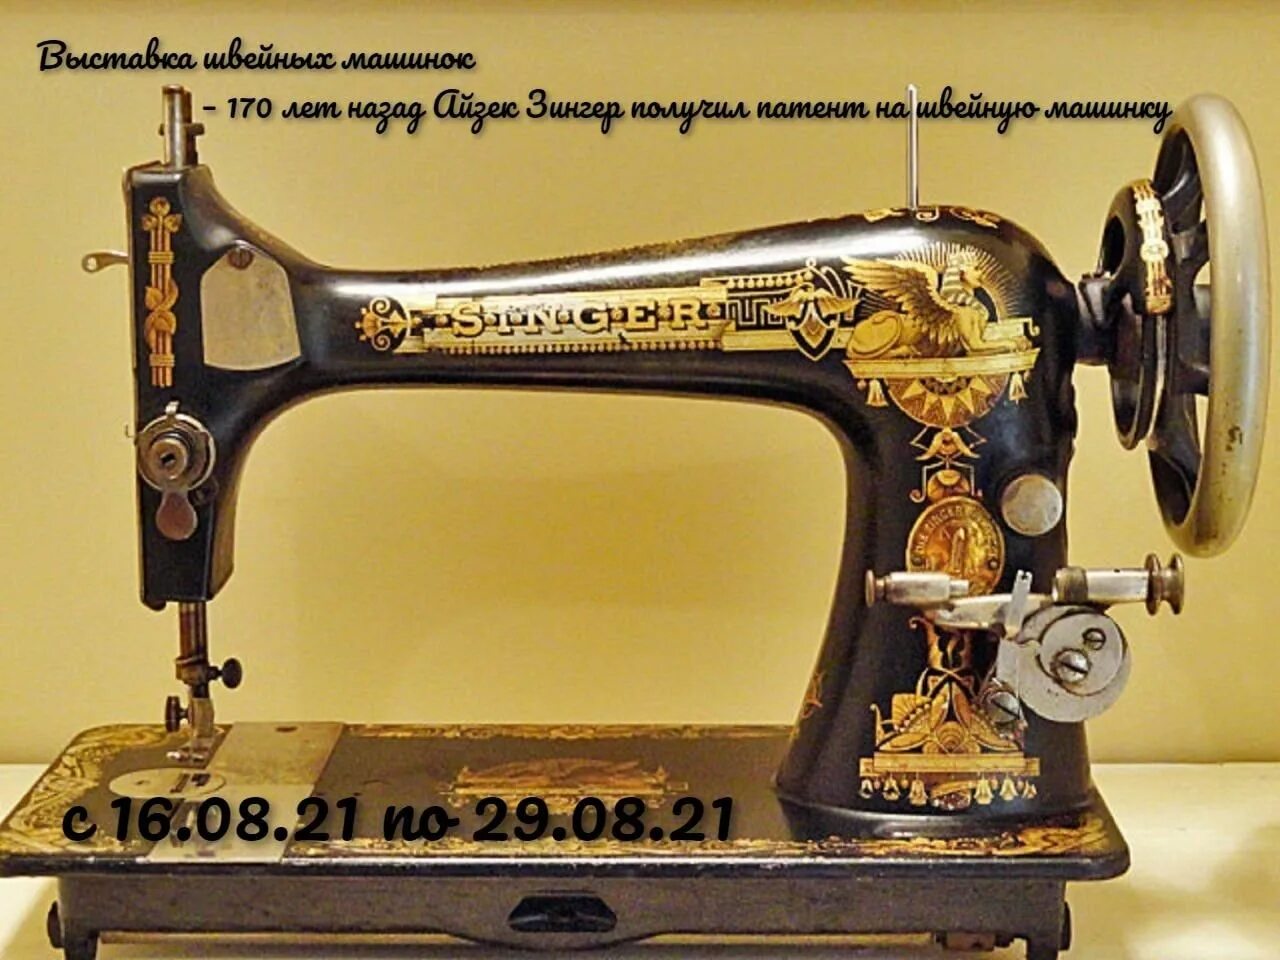 Швейная машинка Зингера 1841. Швейная машинка Зингер а867968. Швейная машинка Зингер s010l. Zinger швейная машинка а3535836.